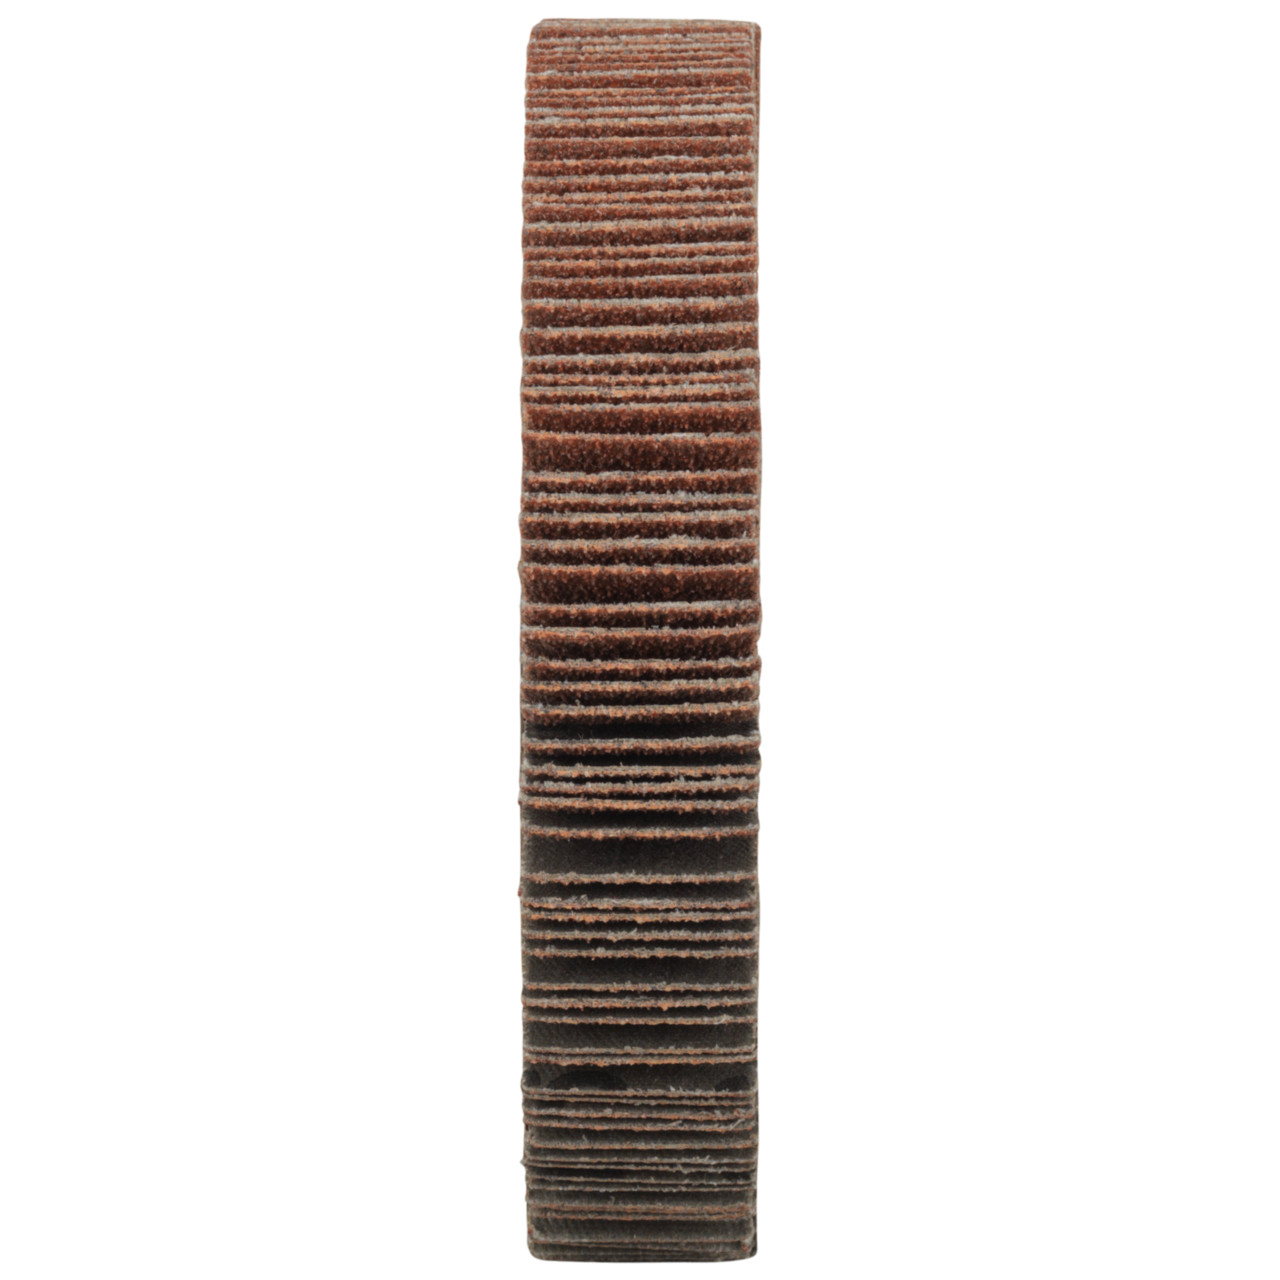 Tyrolit A-P01 C X Ruedas de abanico DxD 115x20 Para acero, metal no férreo y madera, P80, forma: 1LA - (rueda de abanico), Art. 34057514